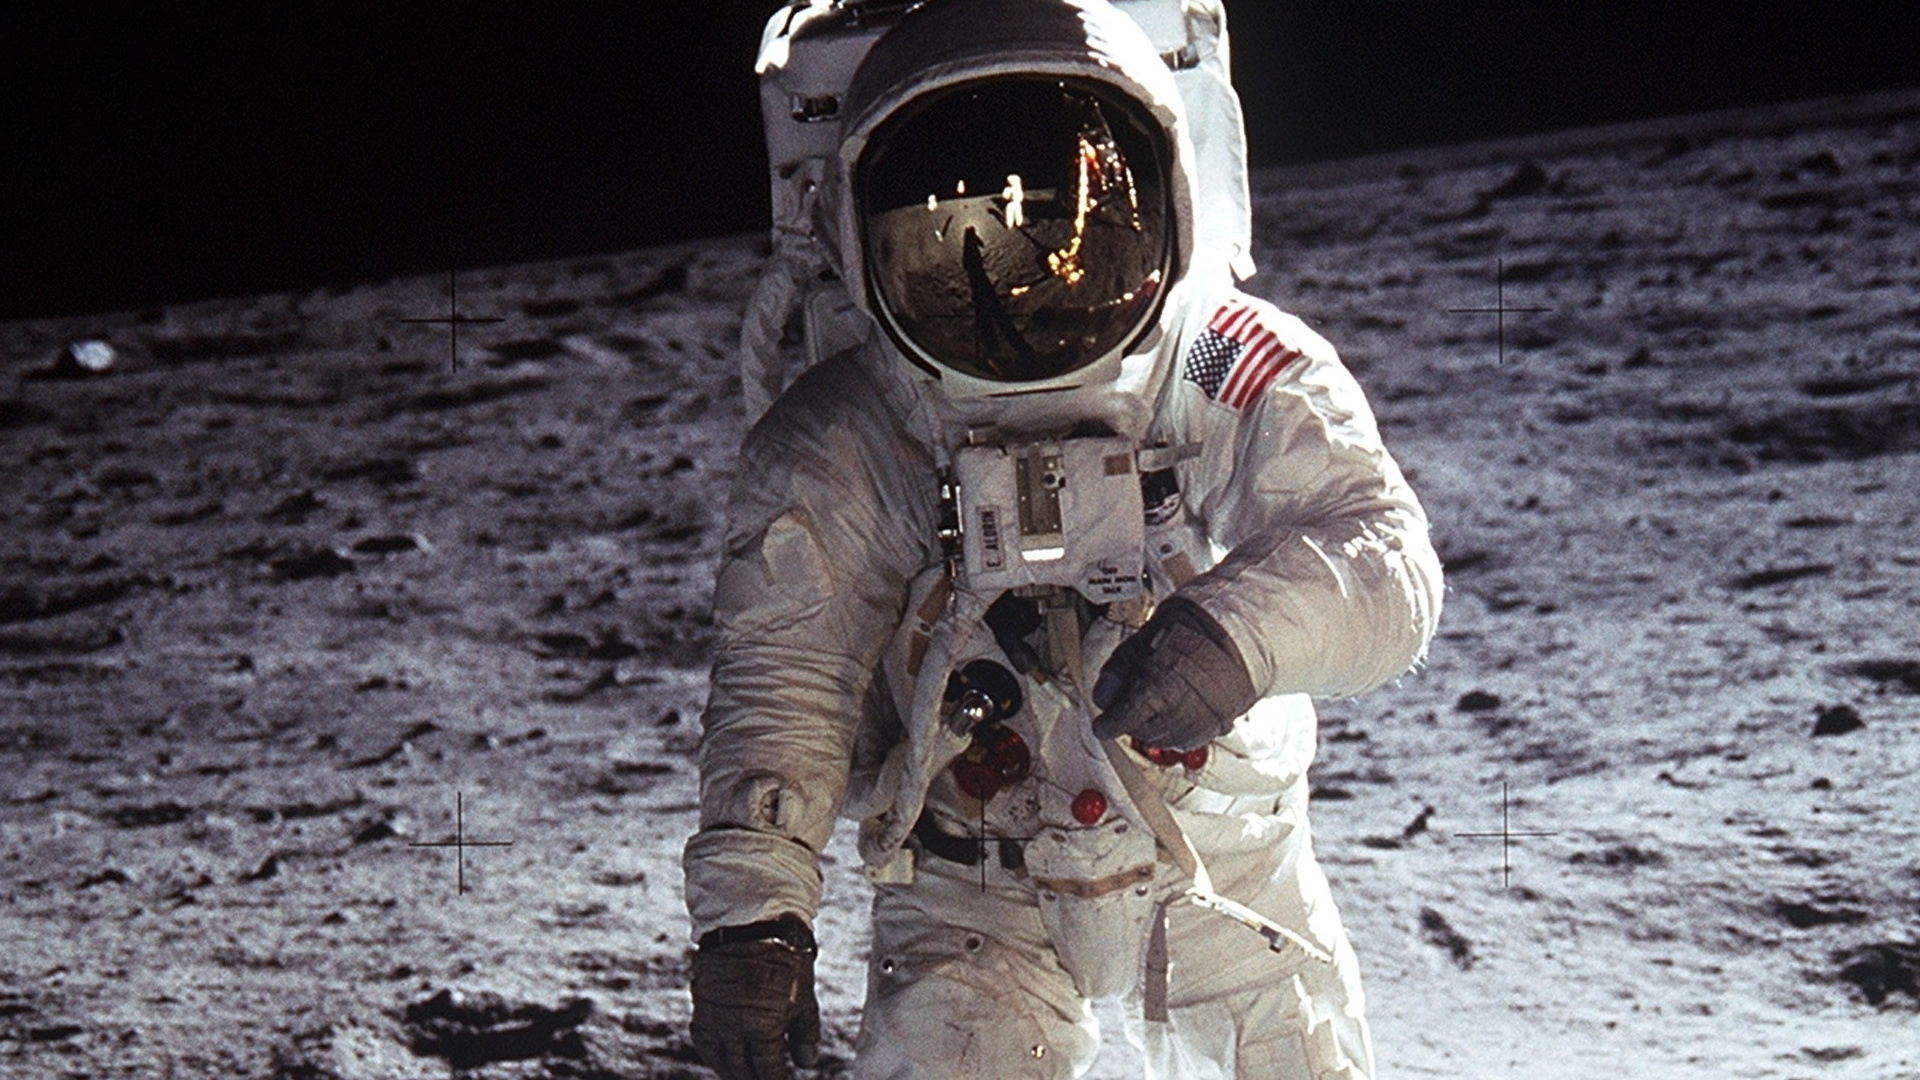 阿波罗11号, 美国宇航局, 月亮, 宇航员, 空间 壁纸 1920x1080 允许